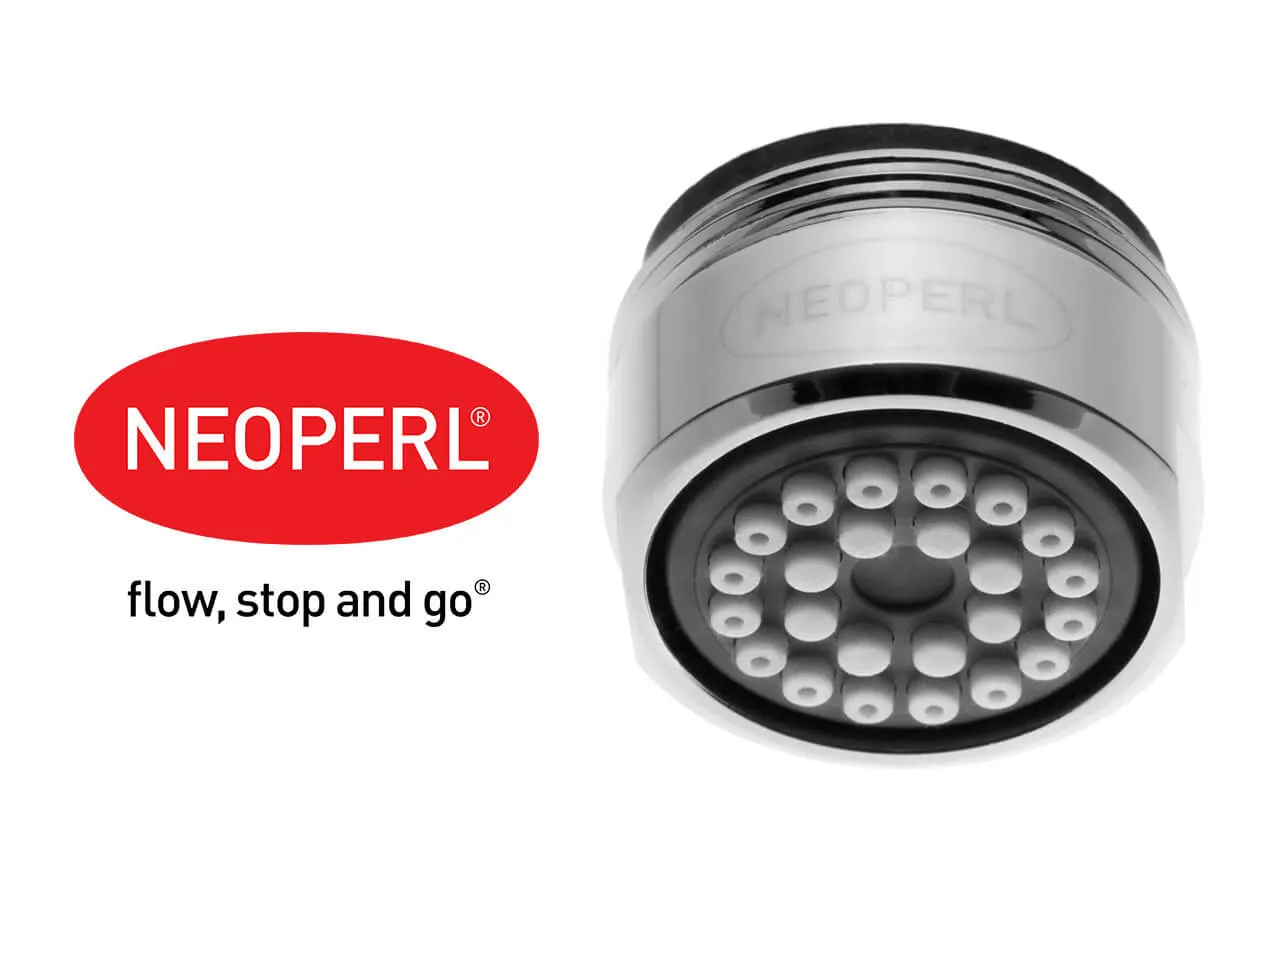 Aeratore per rubinetto Neoperl Spray 1.2 l/min